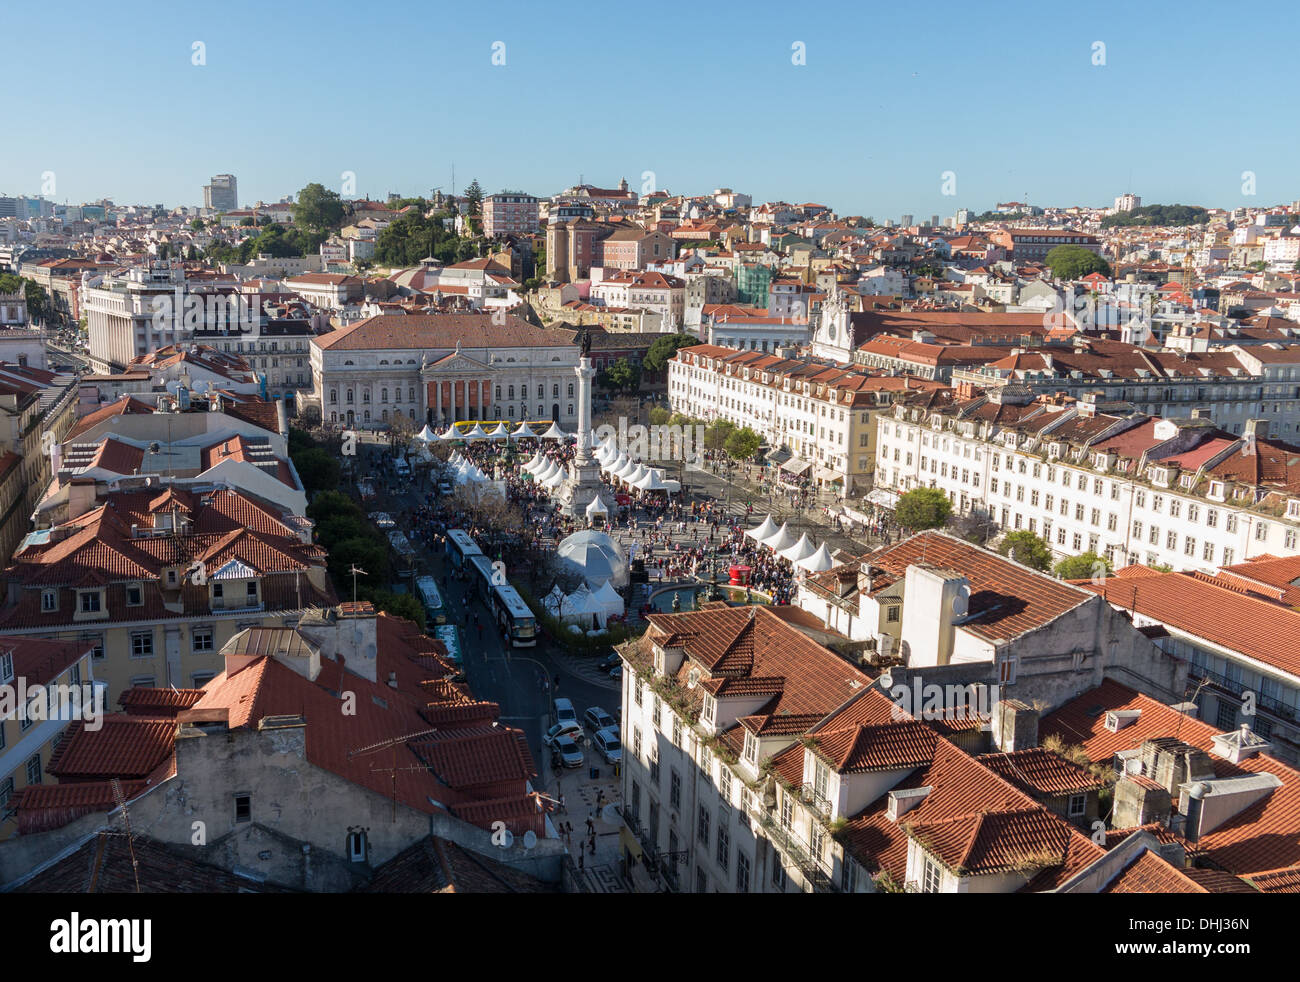 Lisbon, Portugal - Rossio Square / Pedro IV Square Stock Photo